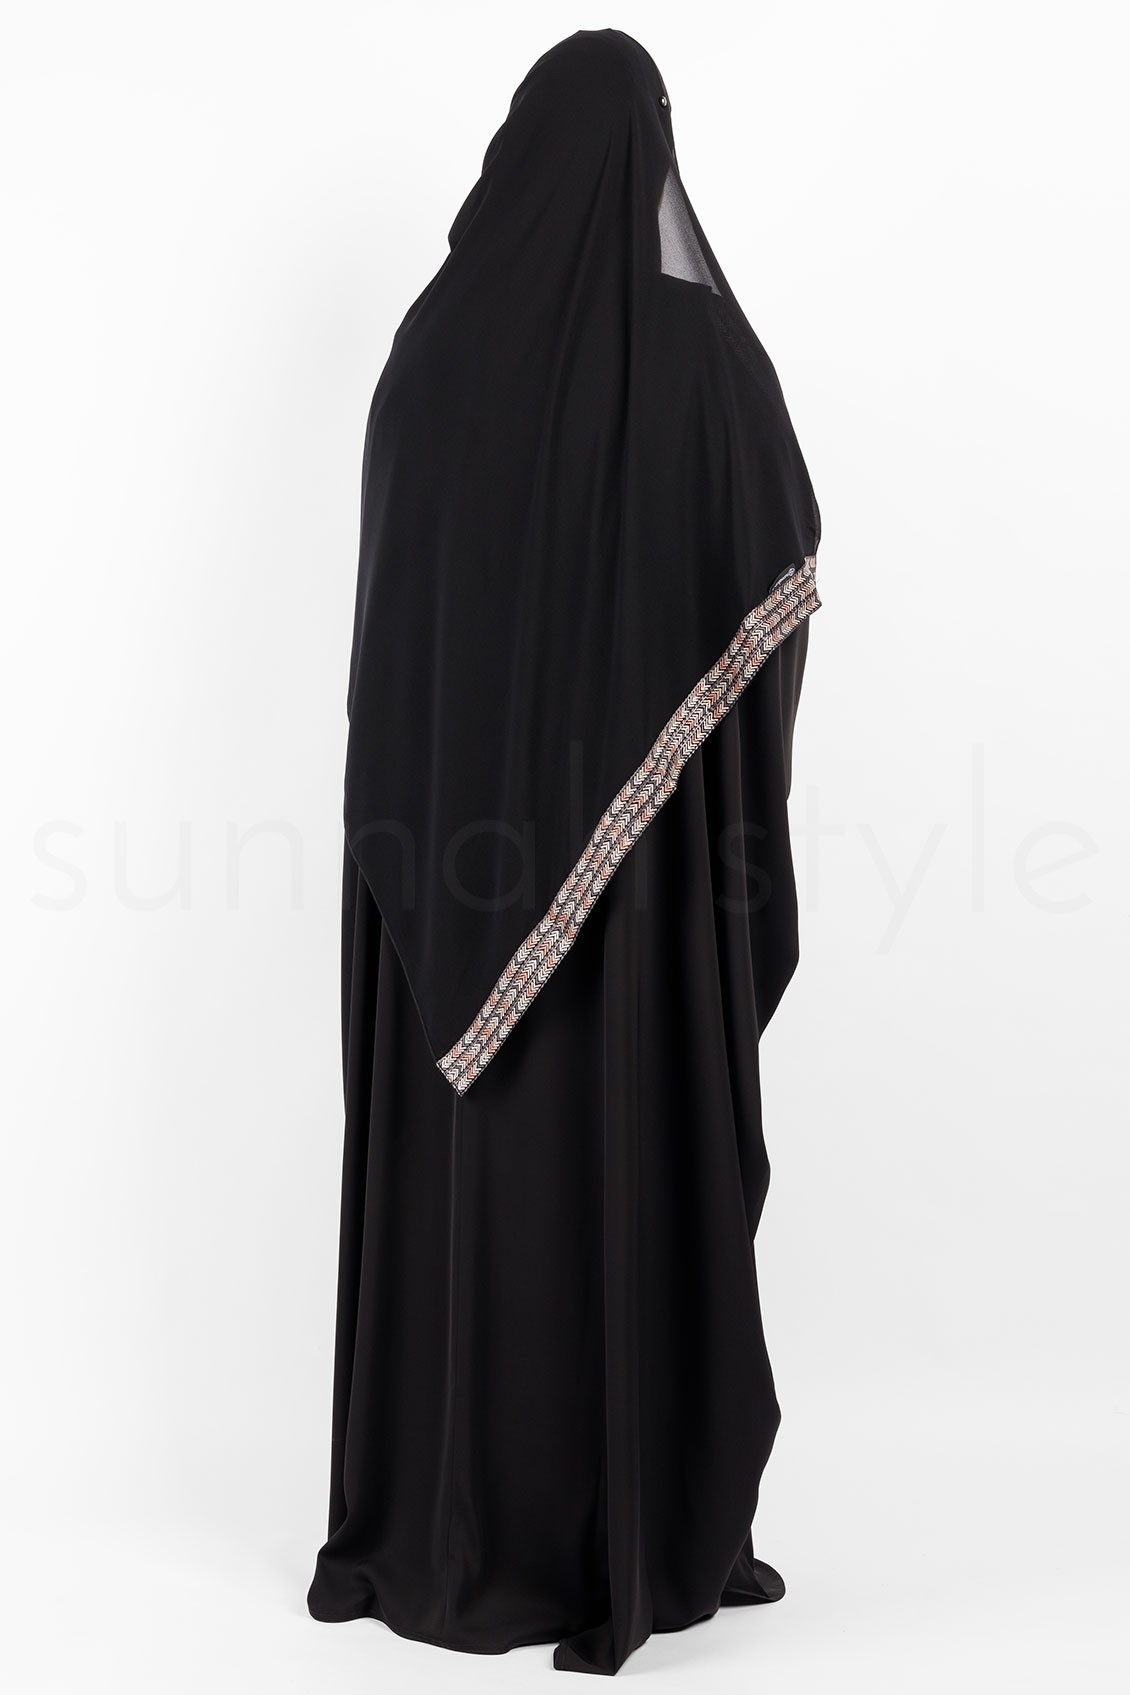 Sunnah Style Chevron Shayla Large